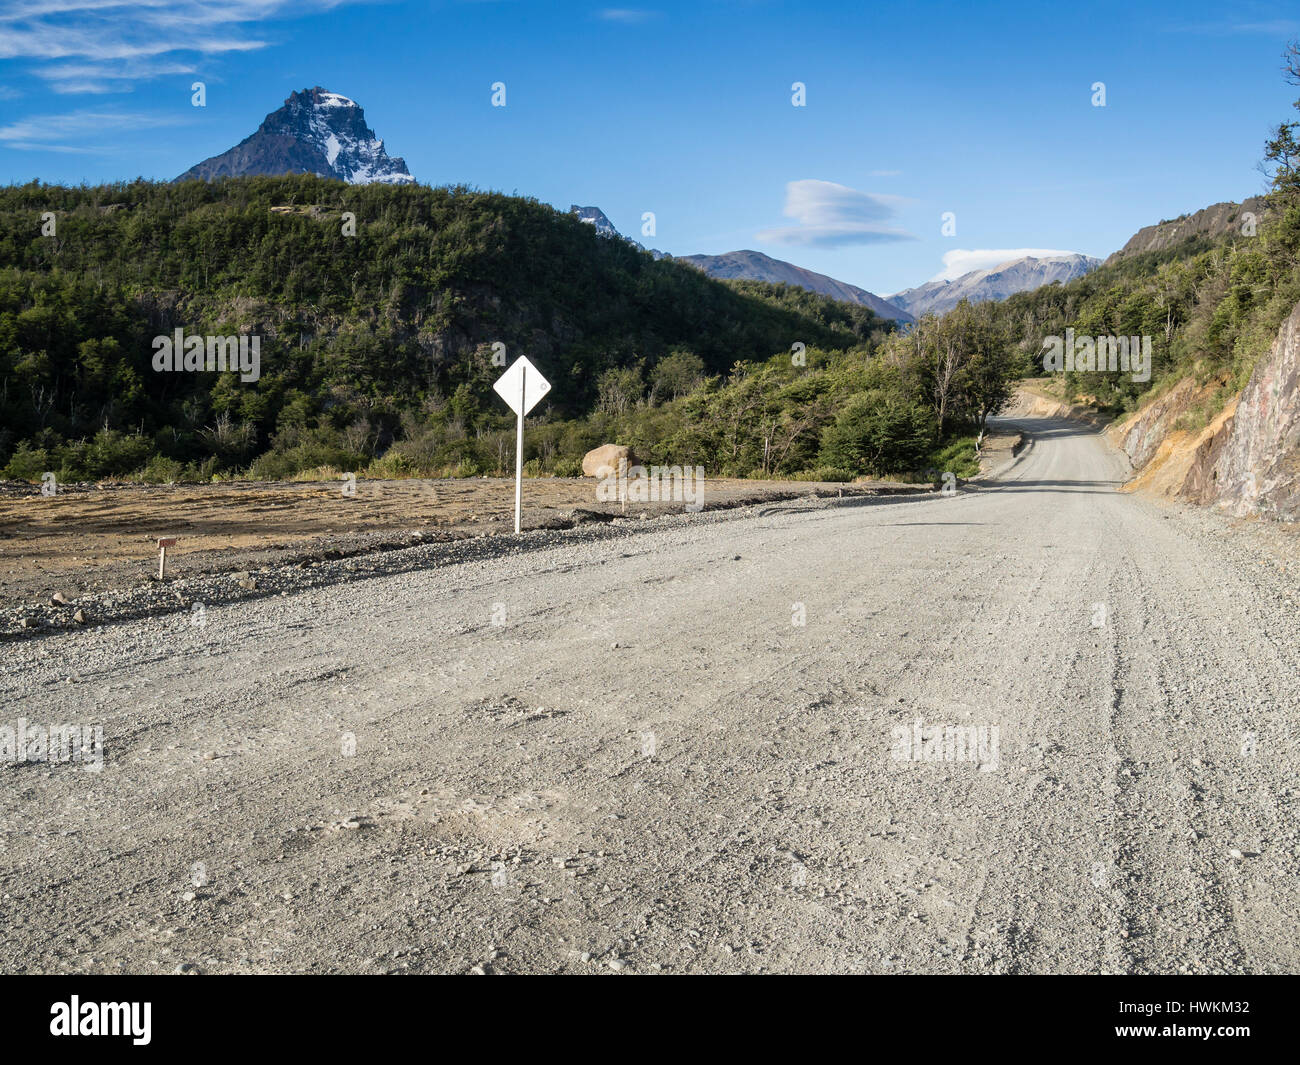 Route Carretera Austral près de village Villa Cerro Castillo, région de l'Aysen, Patagonie, Chili Banque D'Images